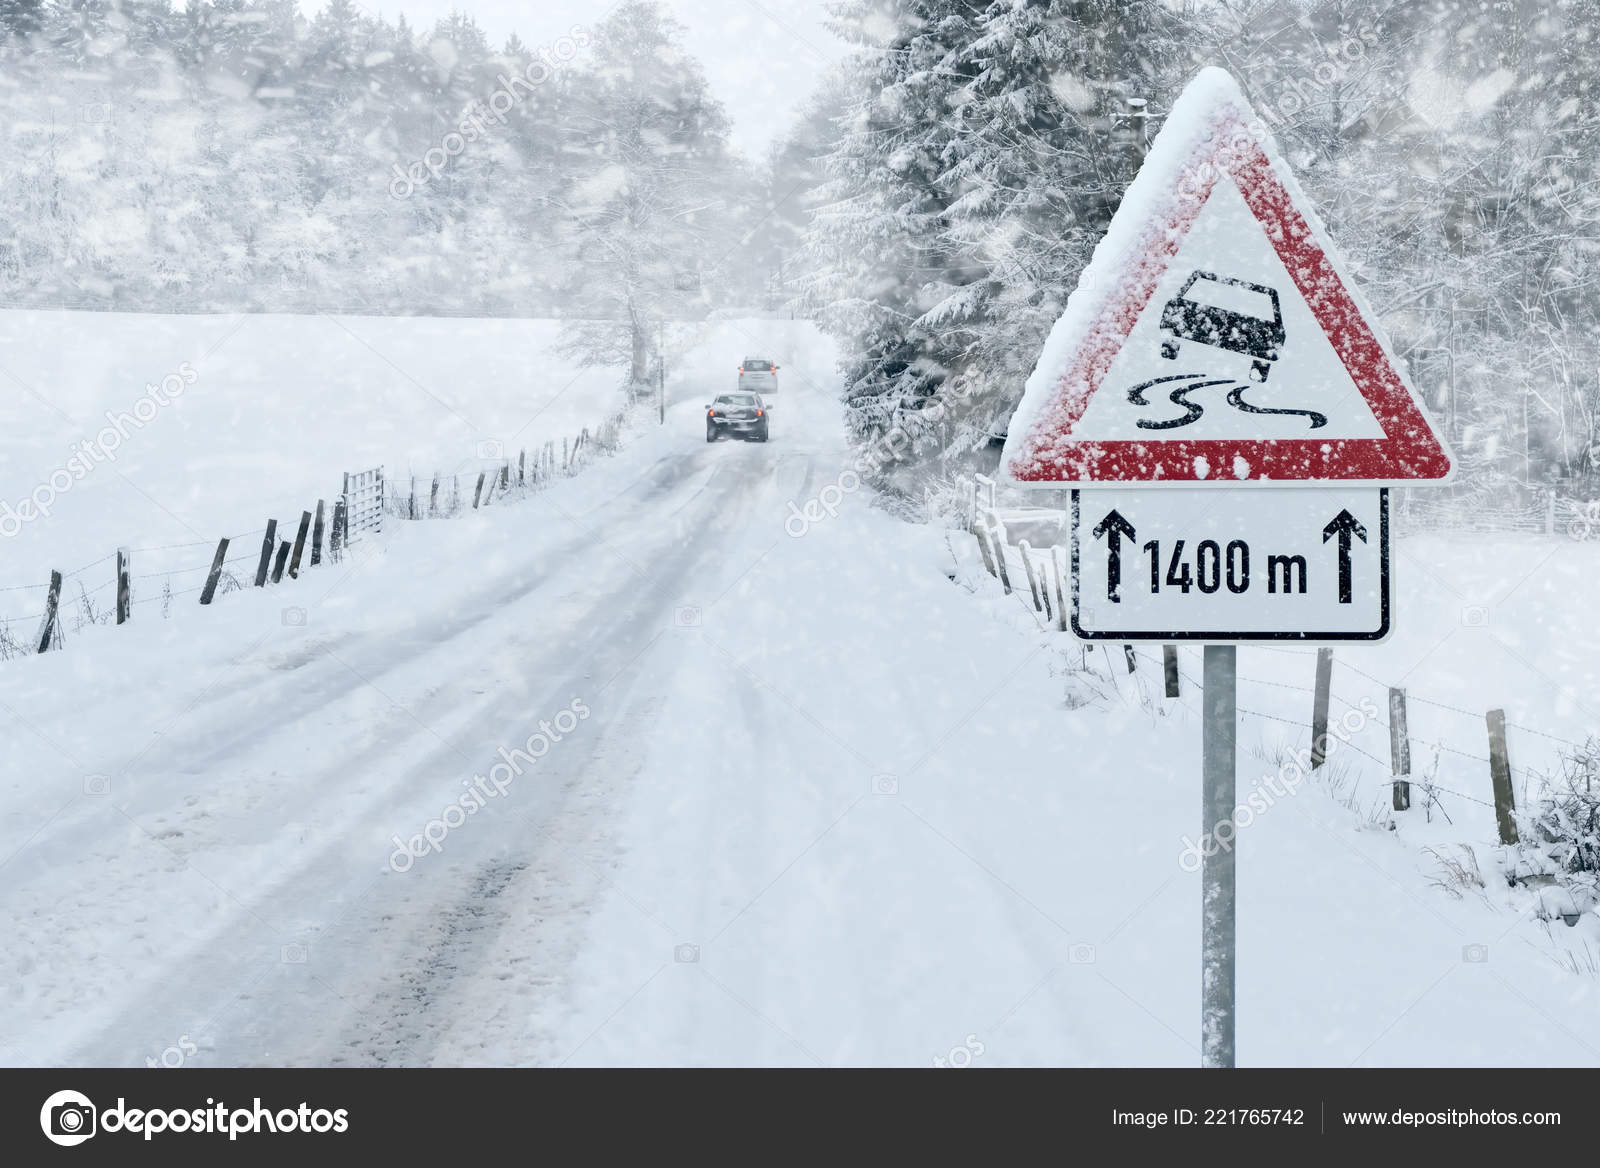 Warnschild Unfall und Warnleuchte an einer Straße mit Schneematsch